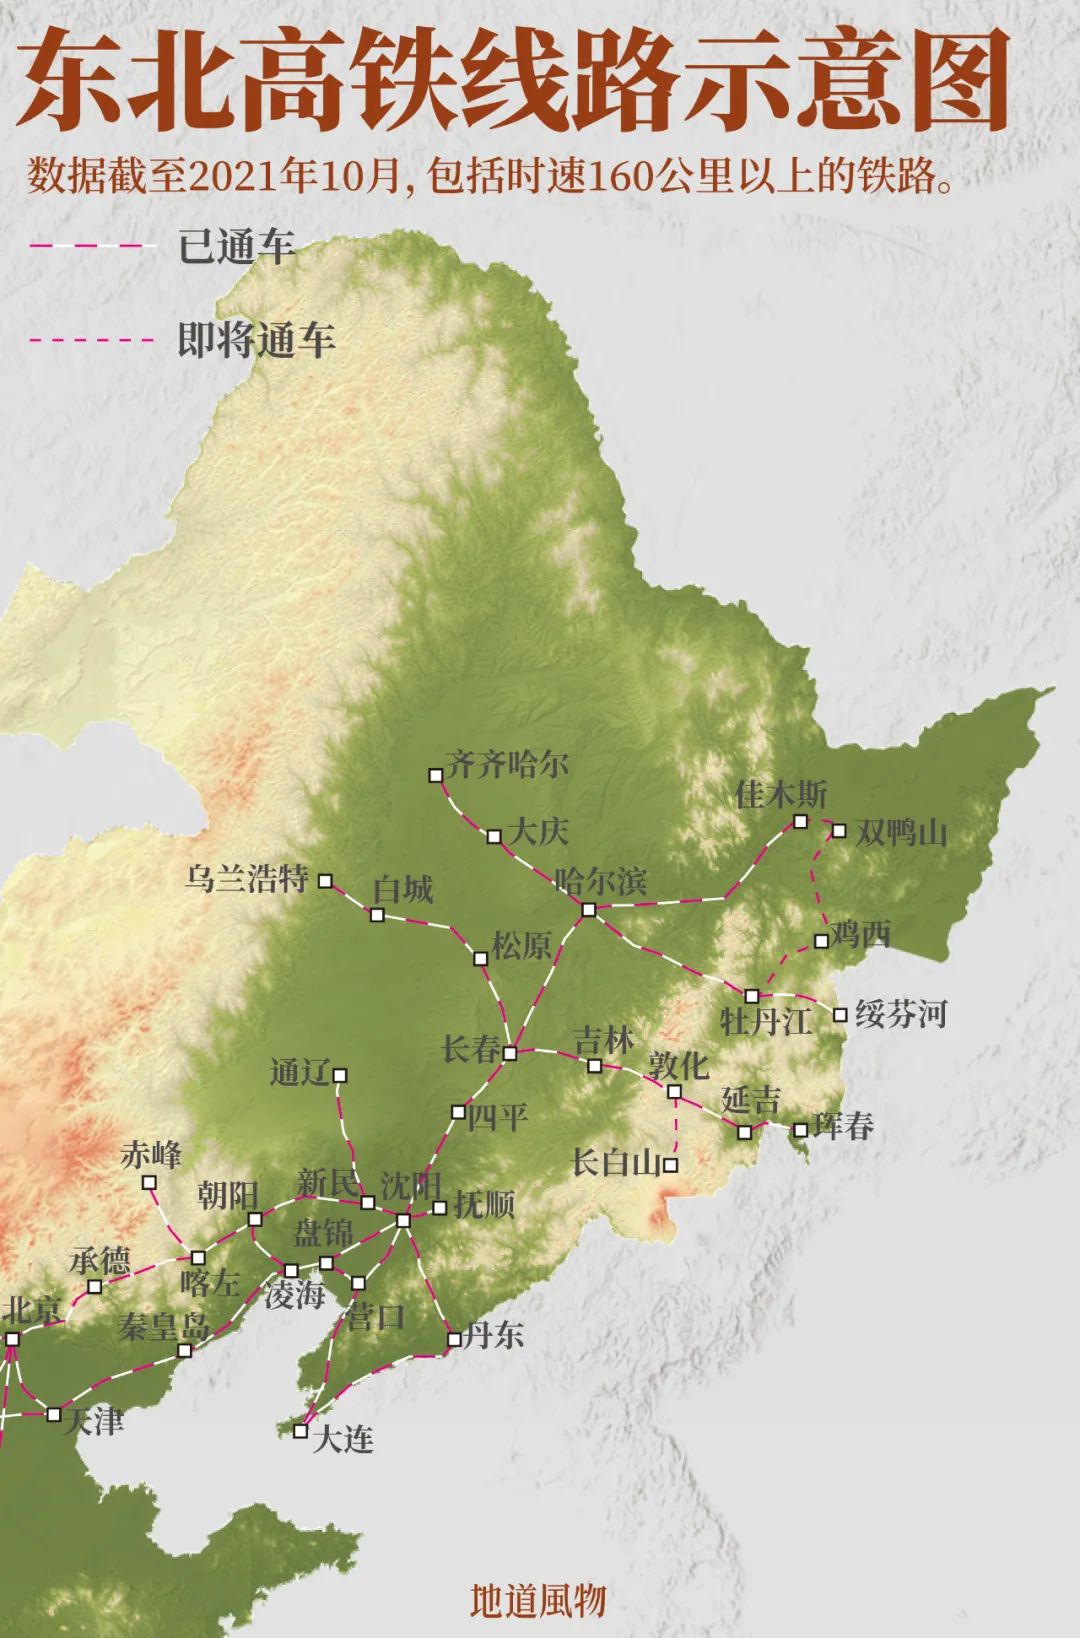 东北三省铁路交通地图图片